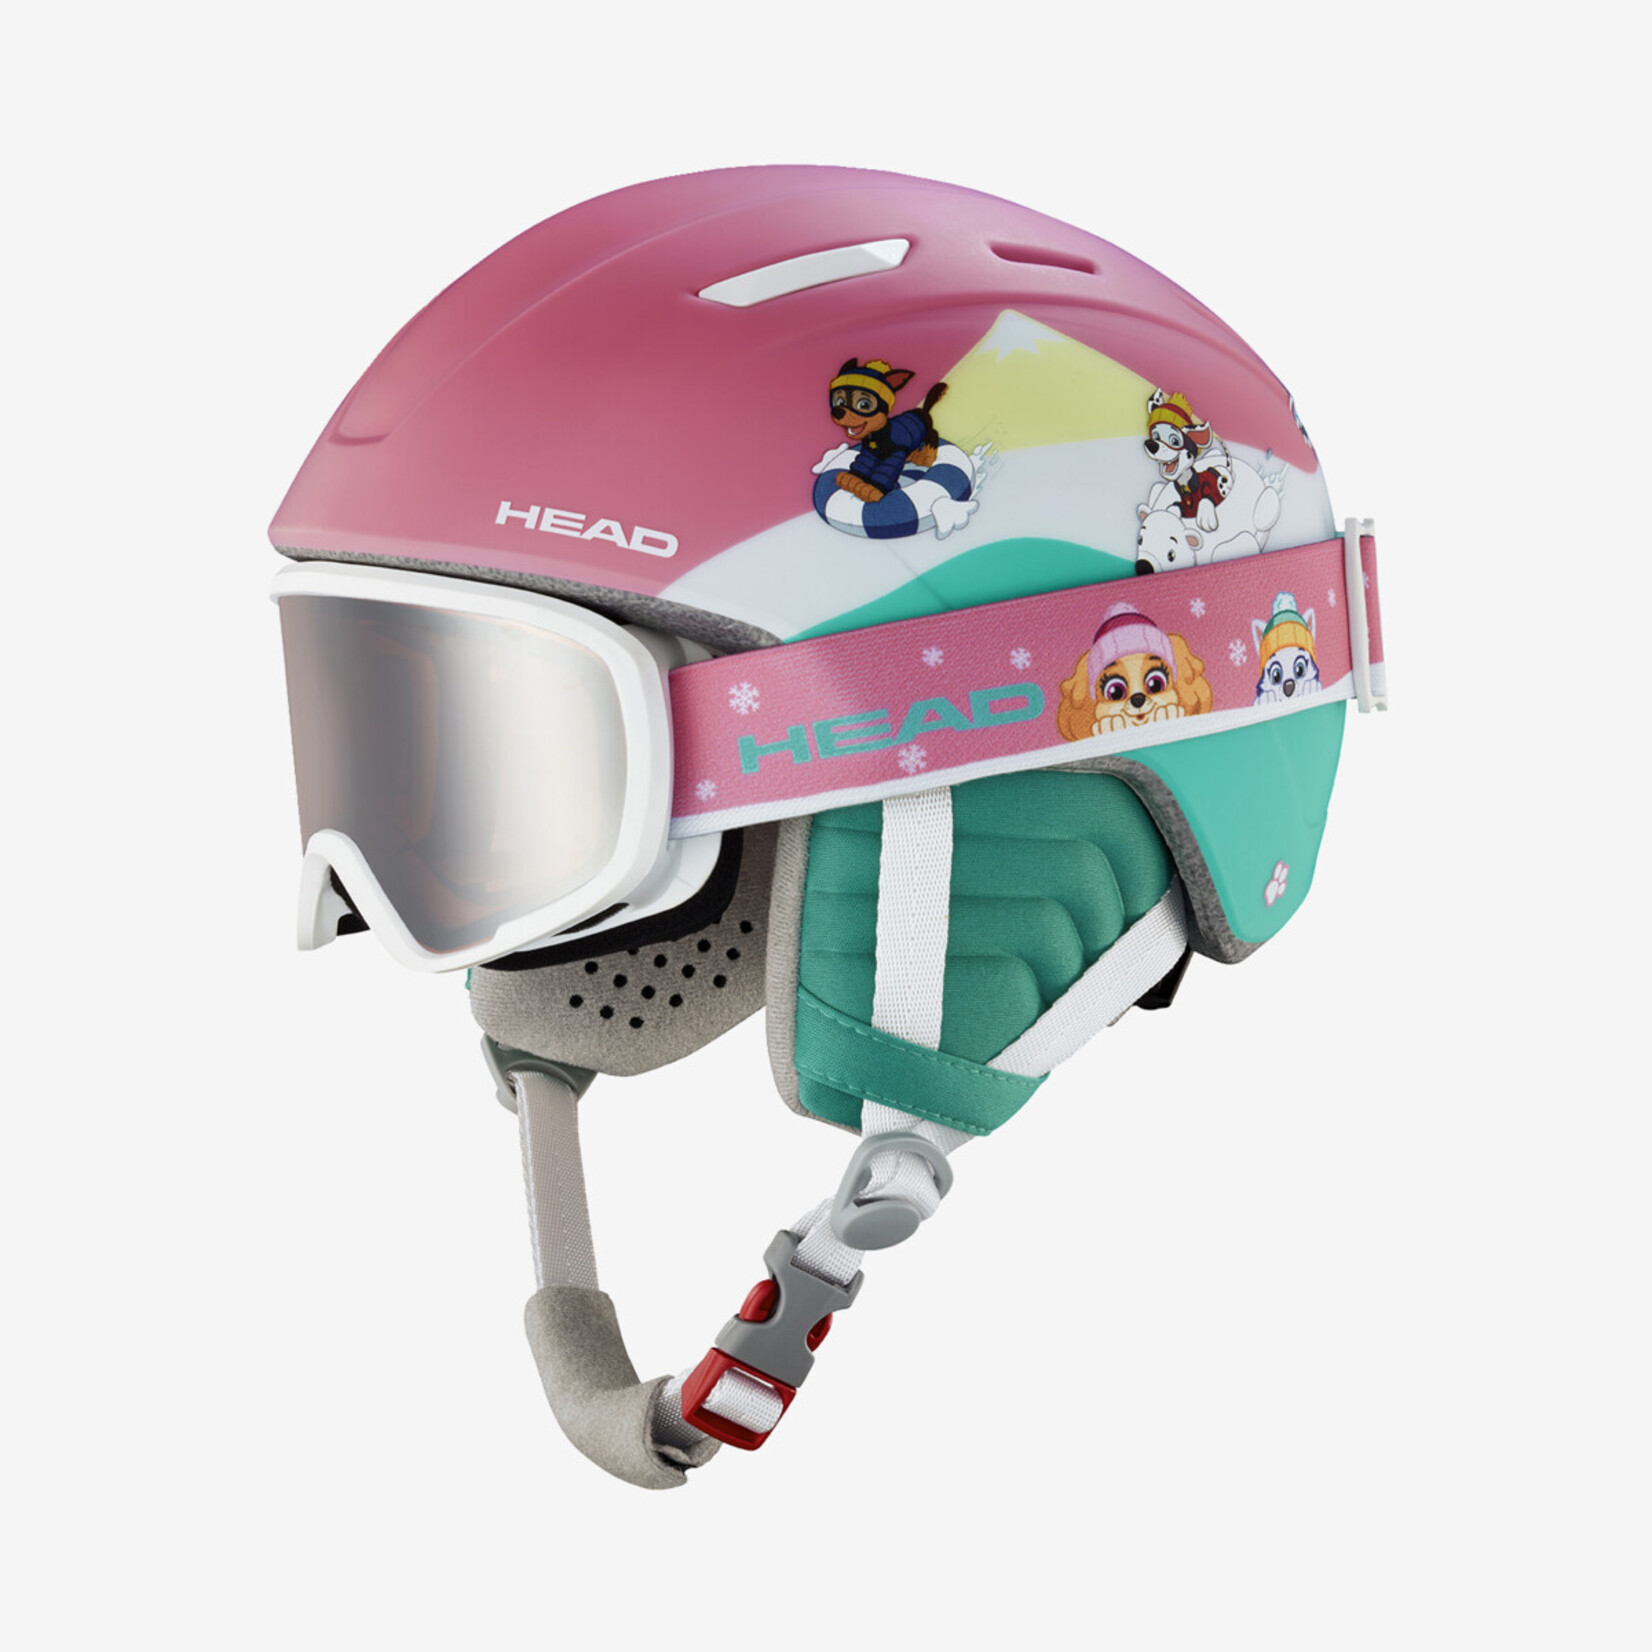 Head Head MAJA Kid's Snow Helmet